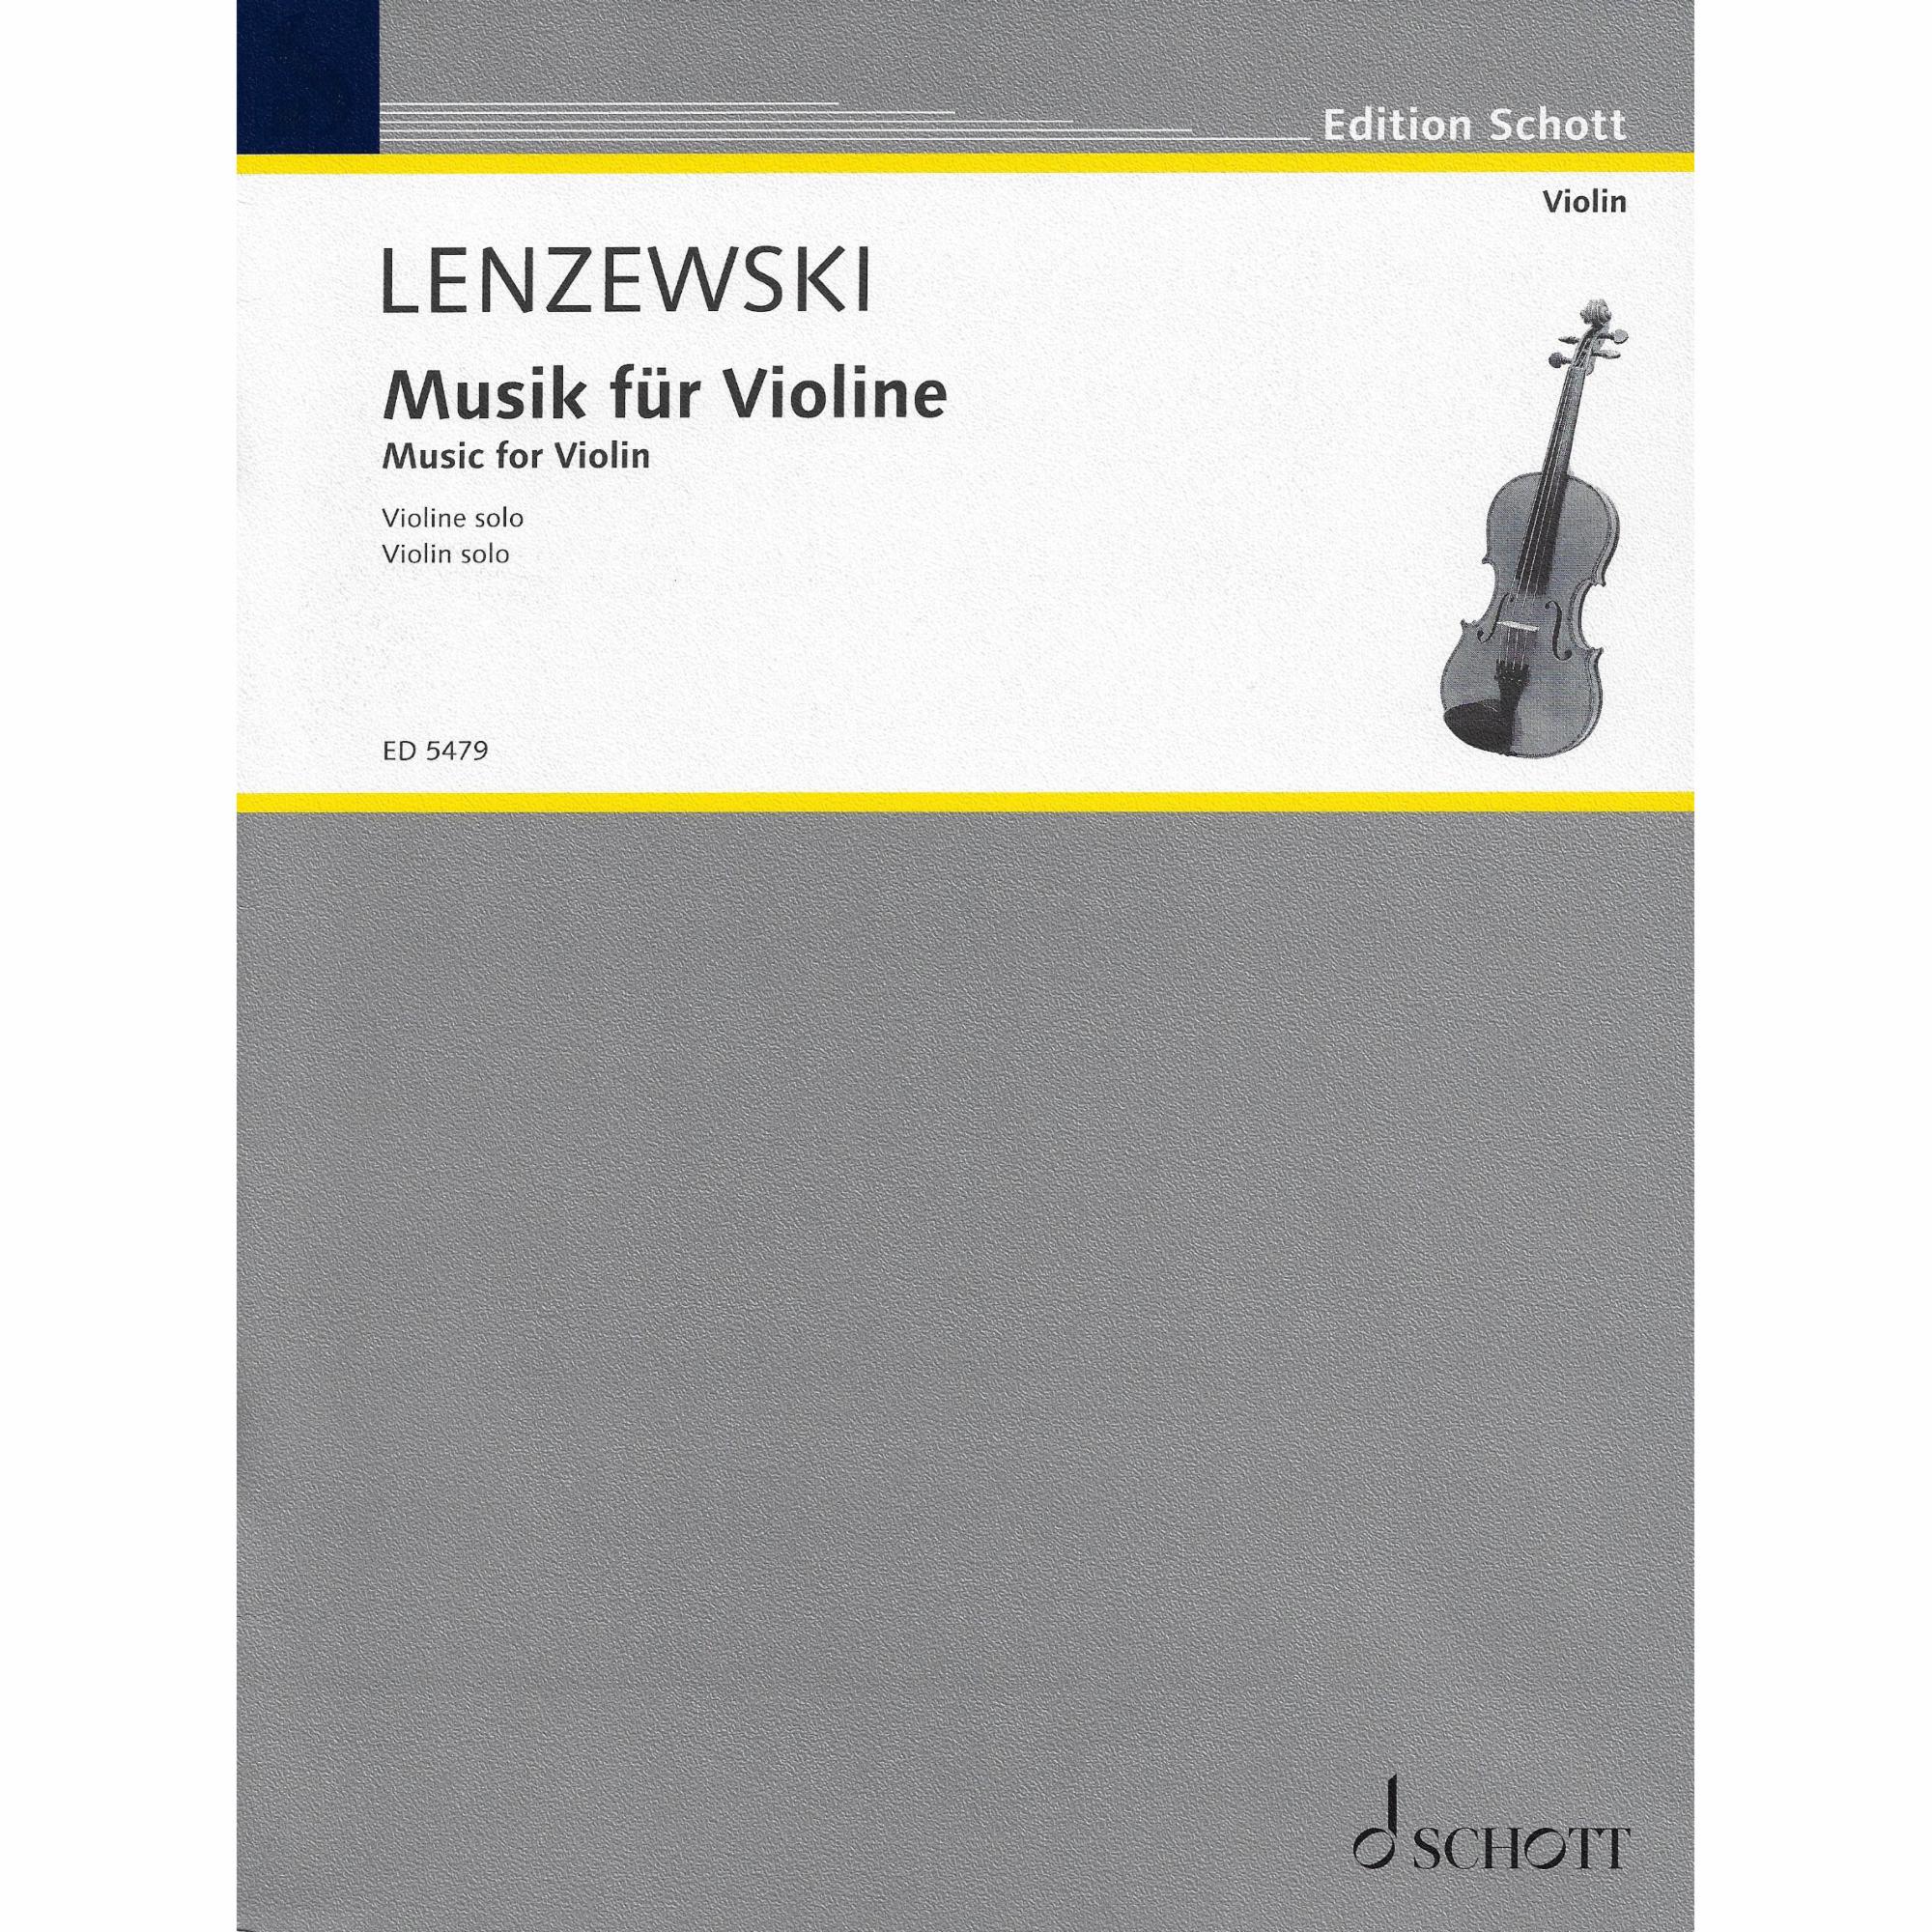 Lenzewski -- Music for Violin for Solo Violin